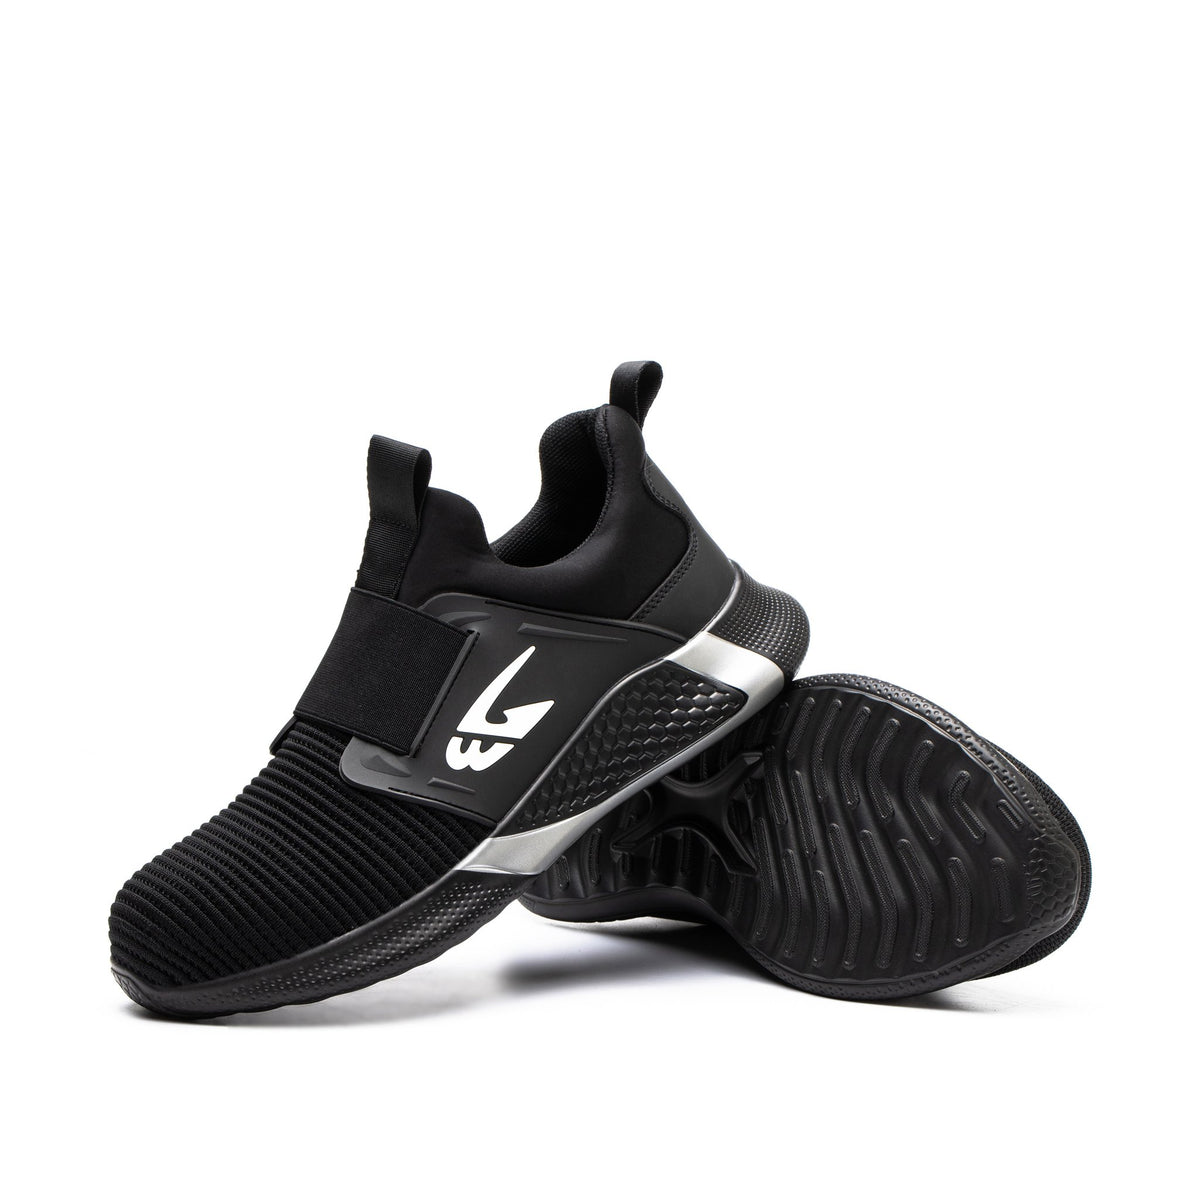 Jet Black - Indestructible Shoes